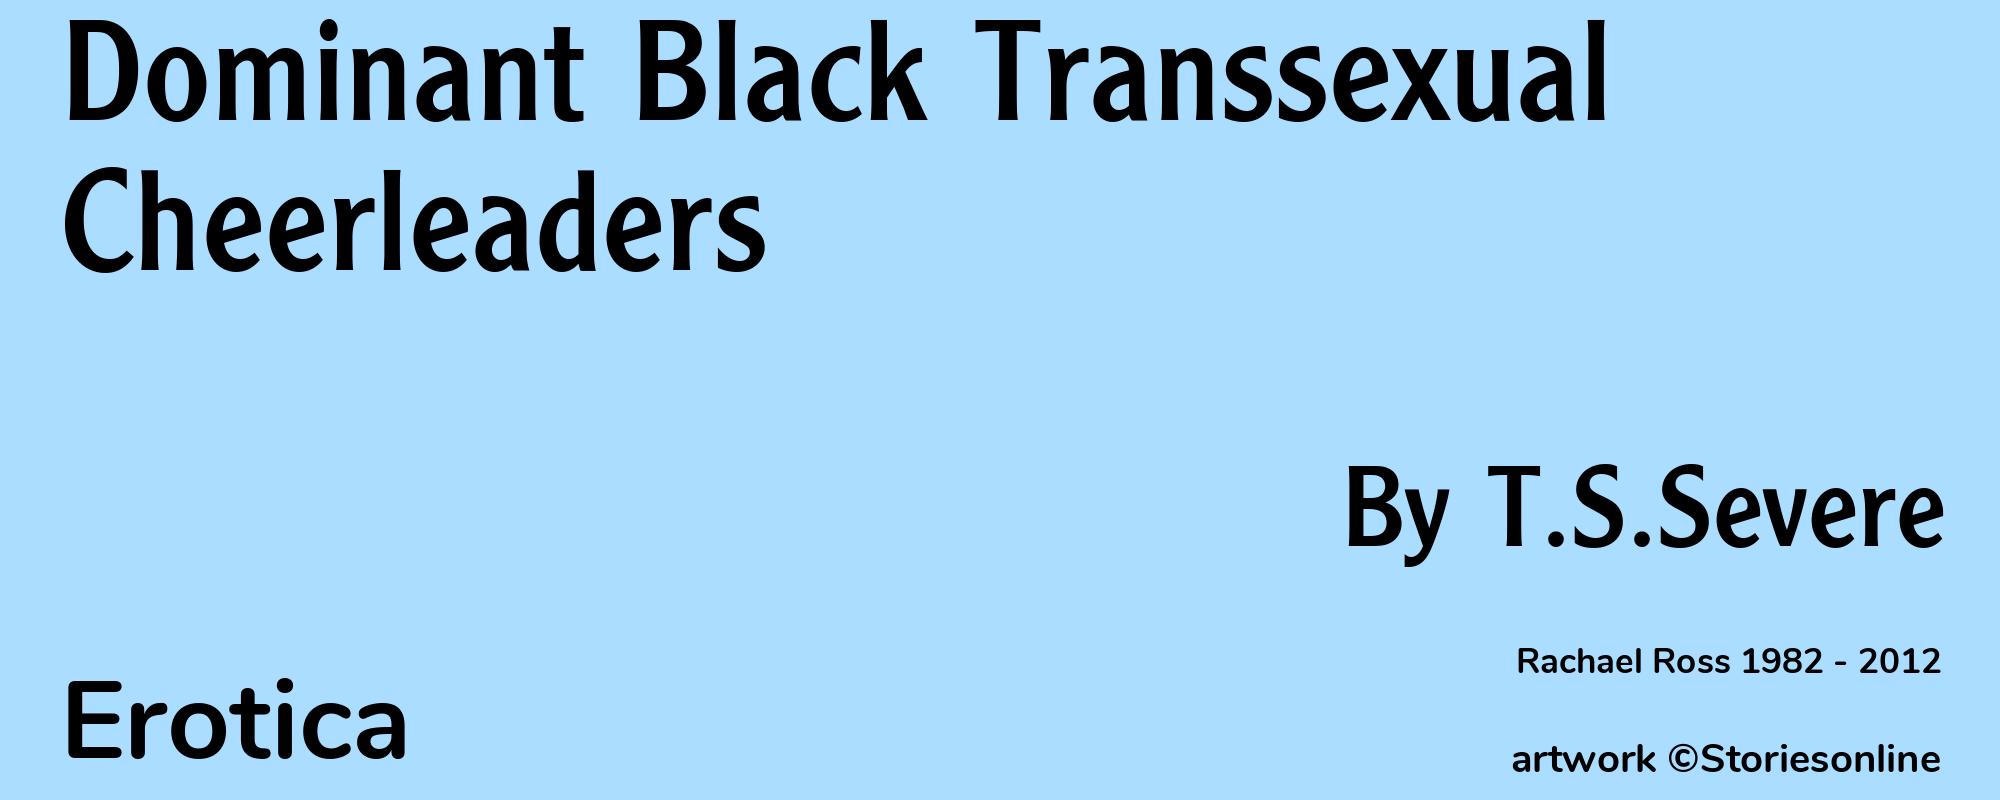 Dominant Black Transsexual Cheerleaders - Cover